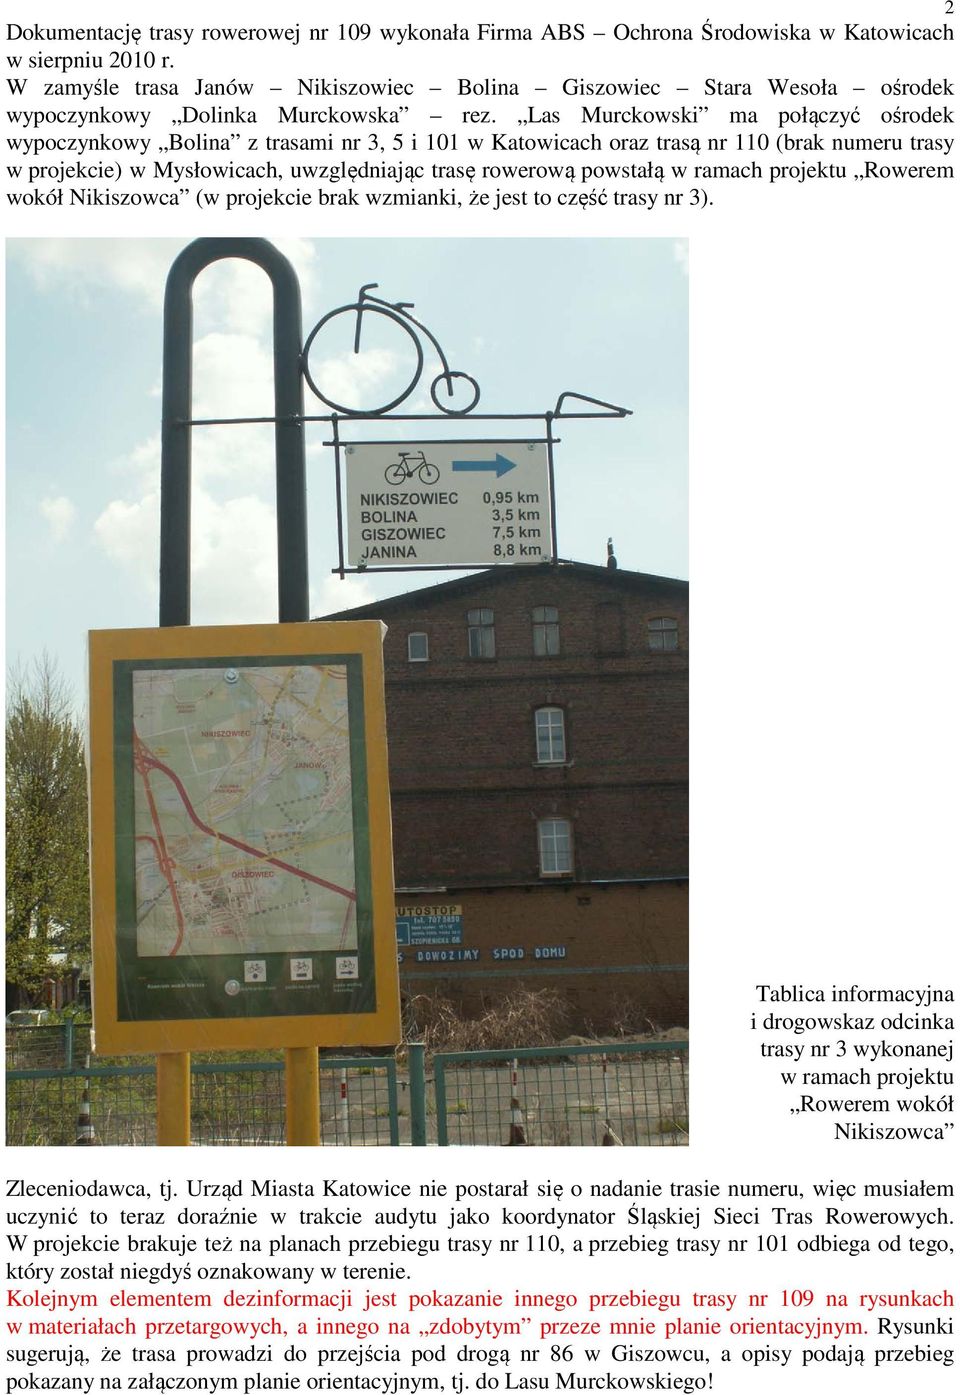 Las Murckowski ma połączyć ośrodek wypoczynkowy Bolina z trasami nr 3, 5 i 101 w Katowicach oraz trasą nr 110 (brak numeru trasy w projekcie) w Mysłowicach, uwzględniając trasę rowerową powstałą w